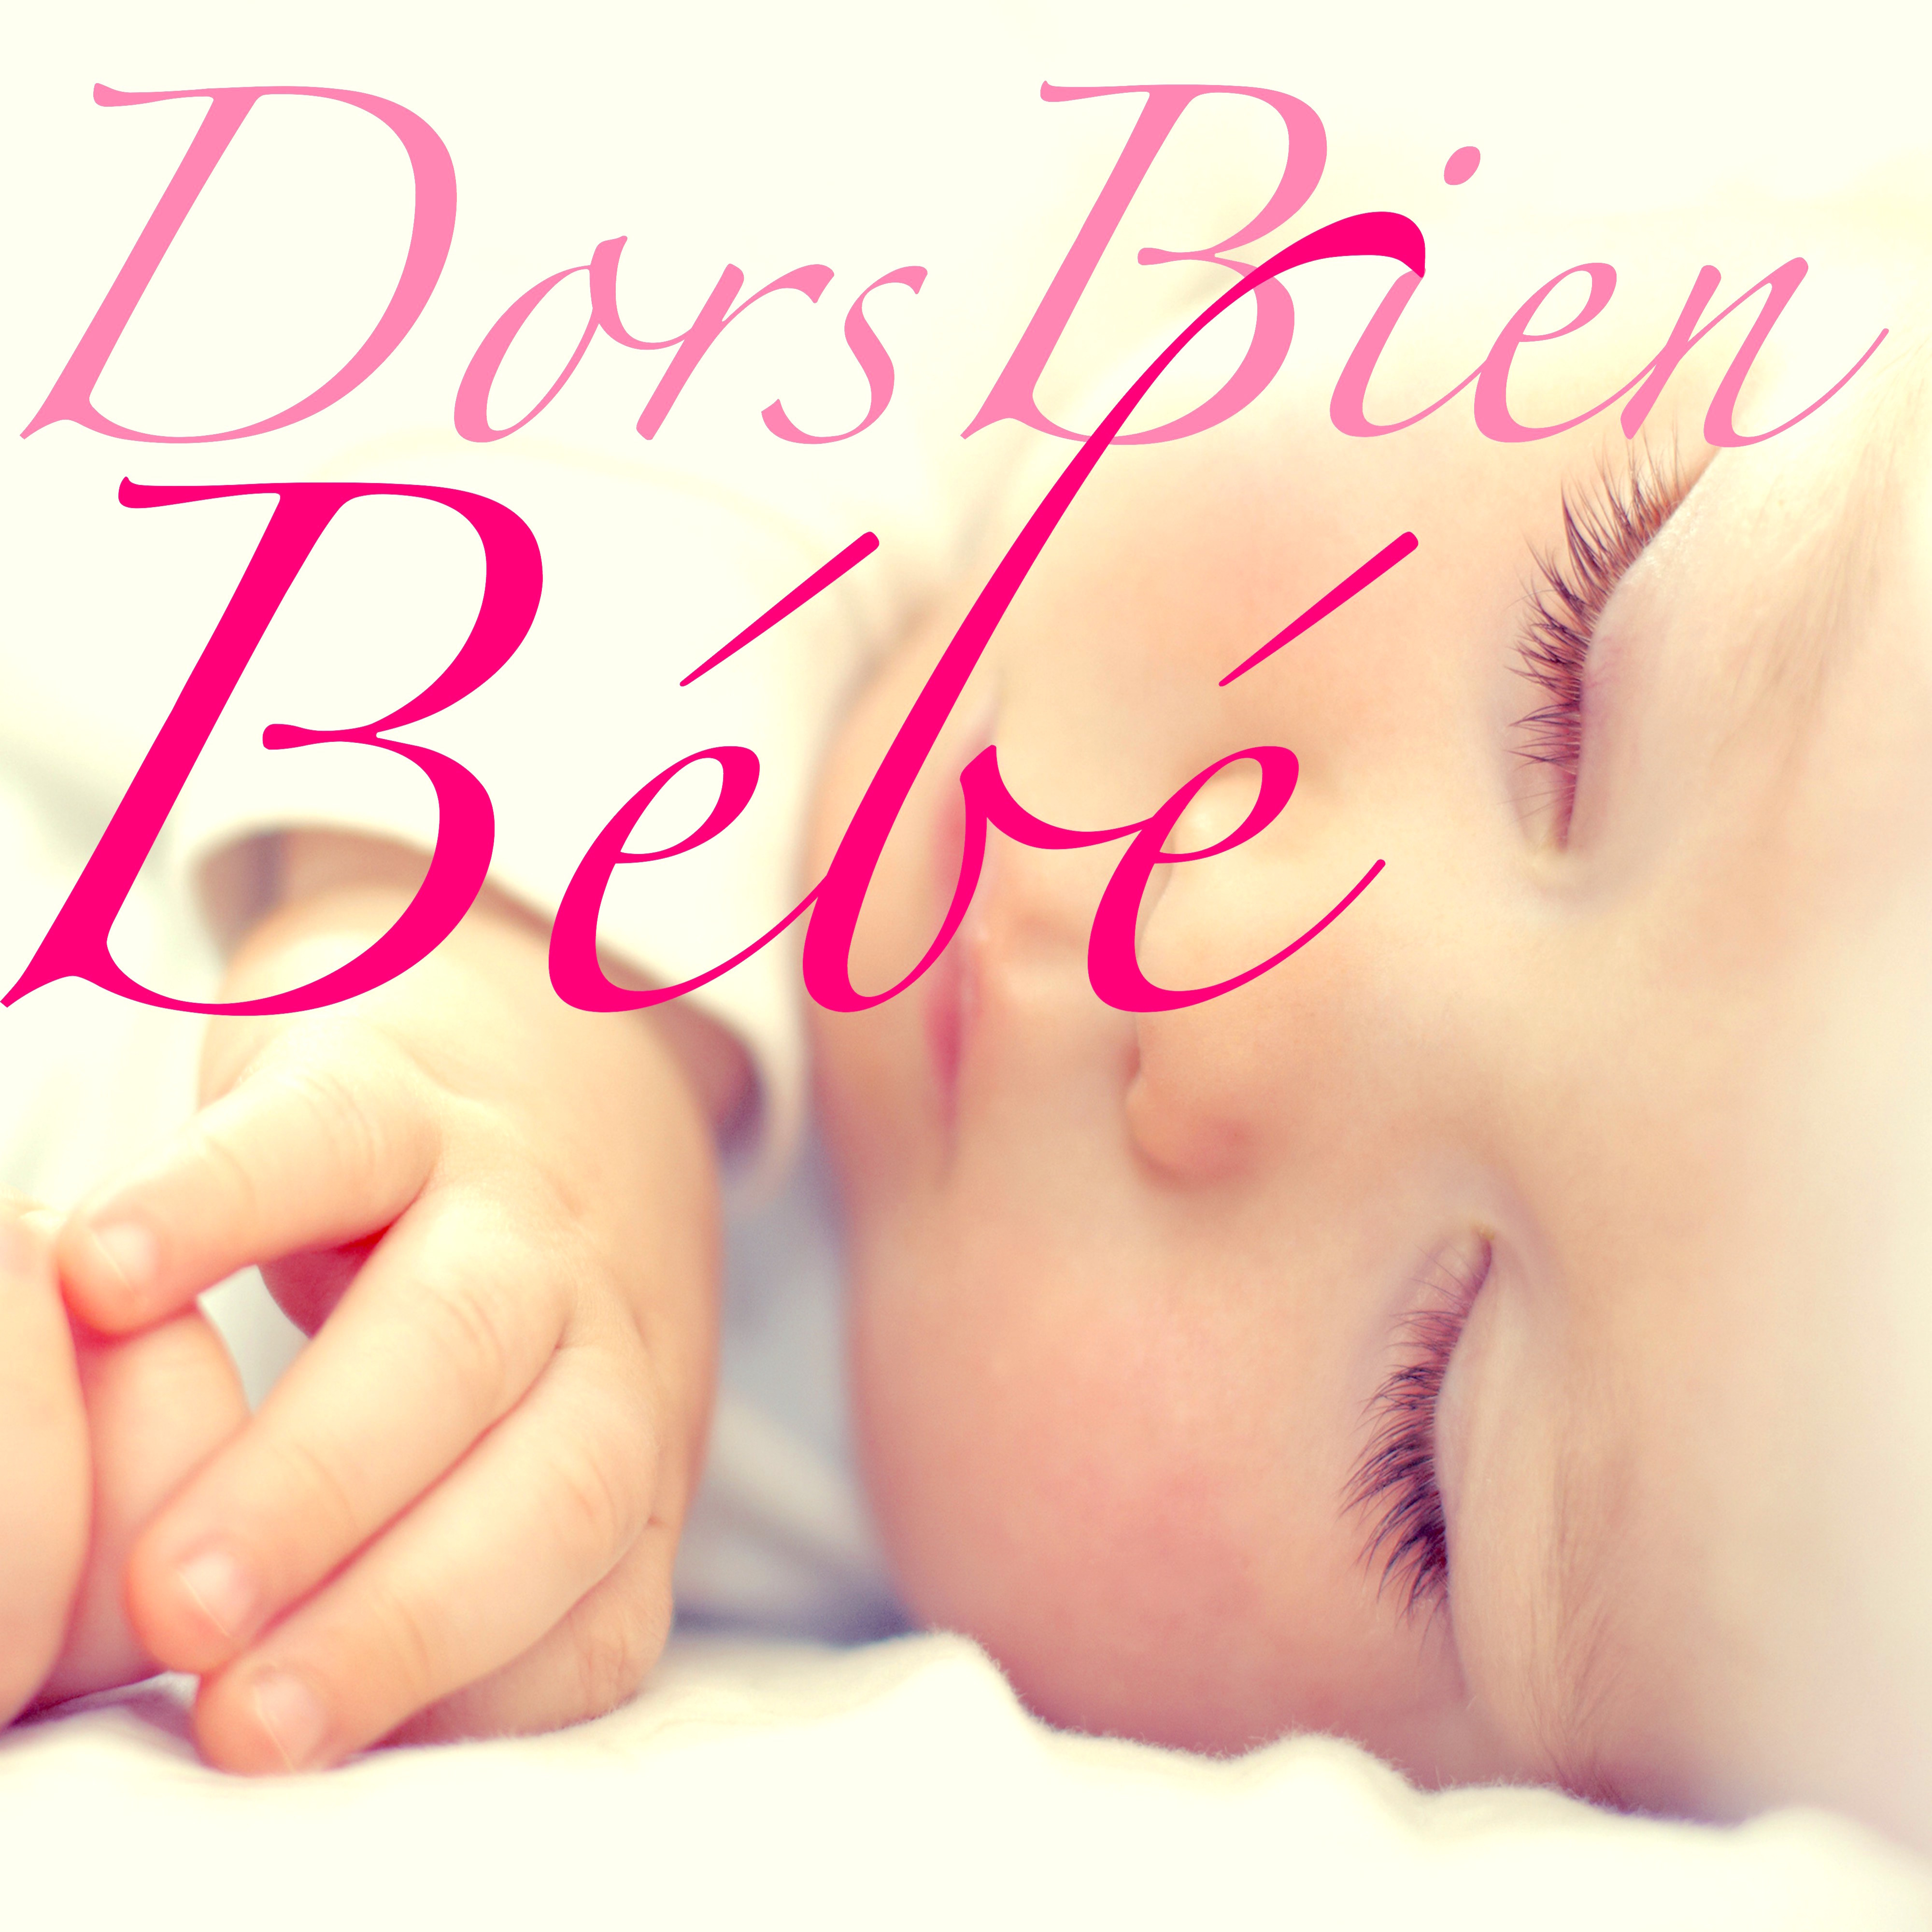 Dors Bien Bébé – Chansons Enfantines pour Dormir et Détente Bébé